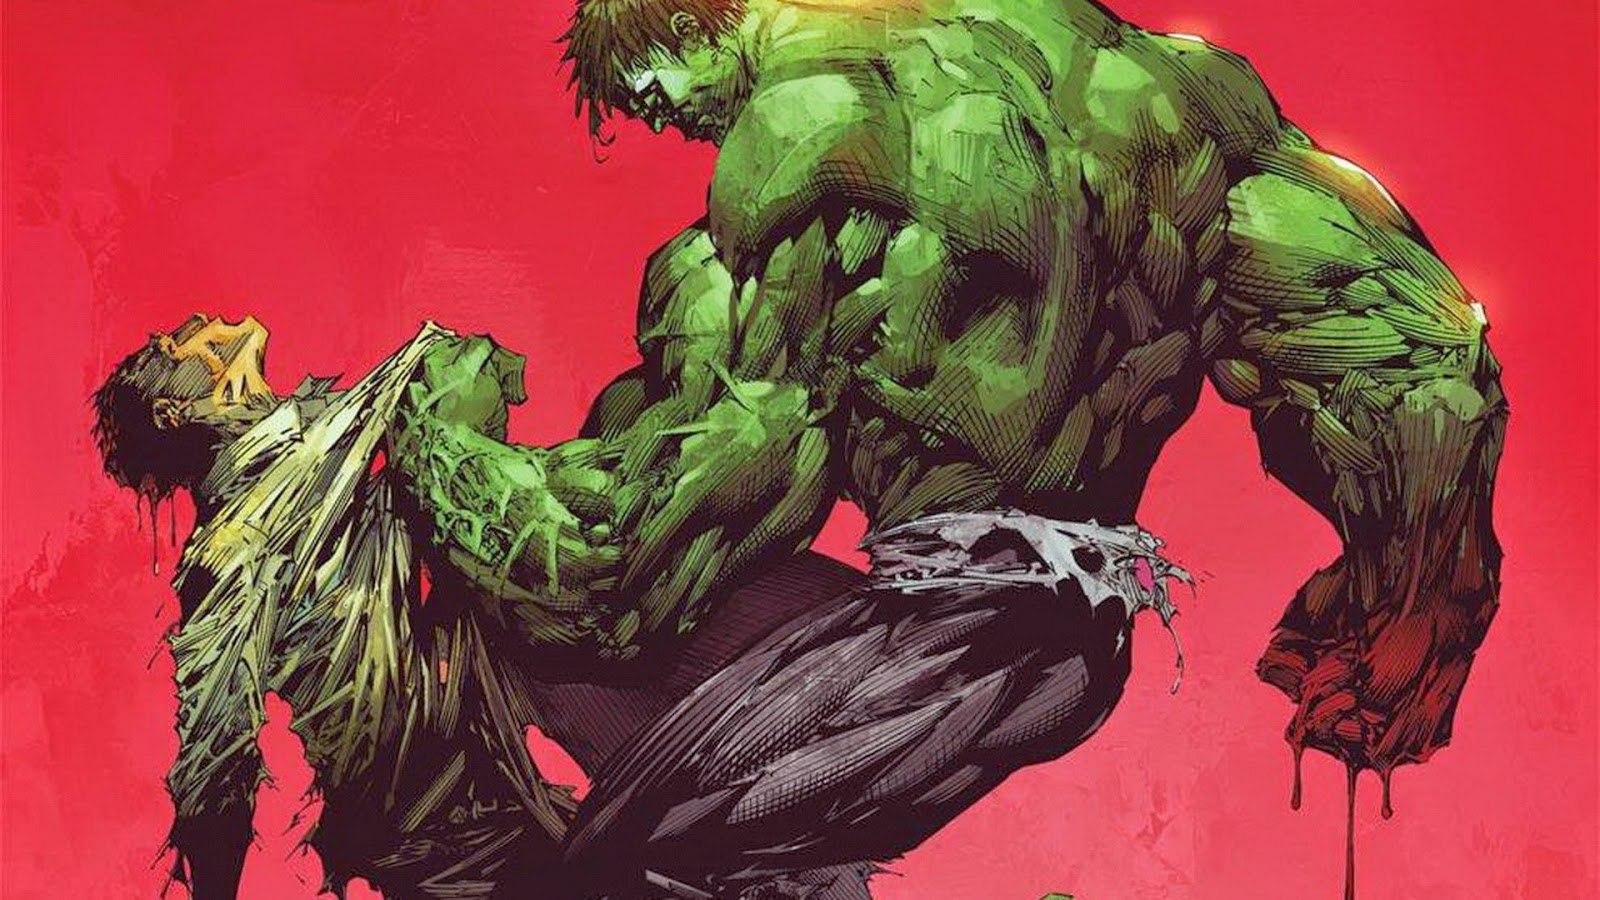 Hulk Wallpaper HD